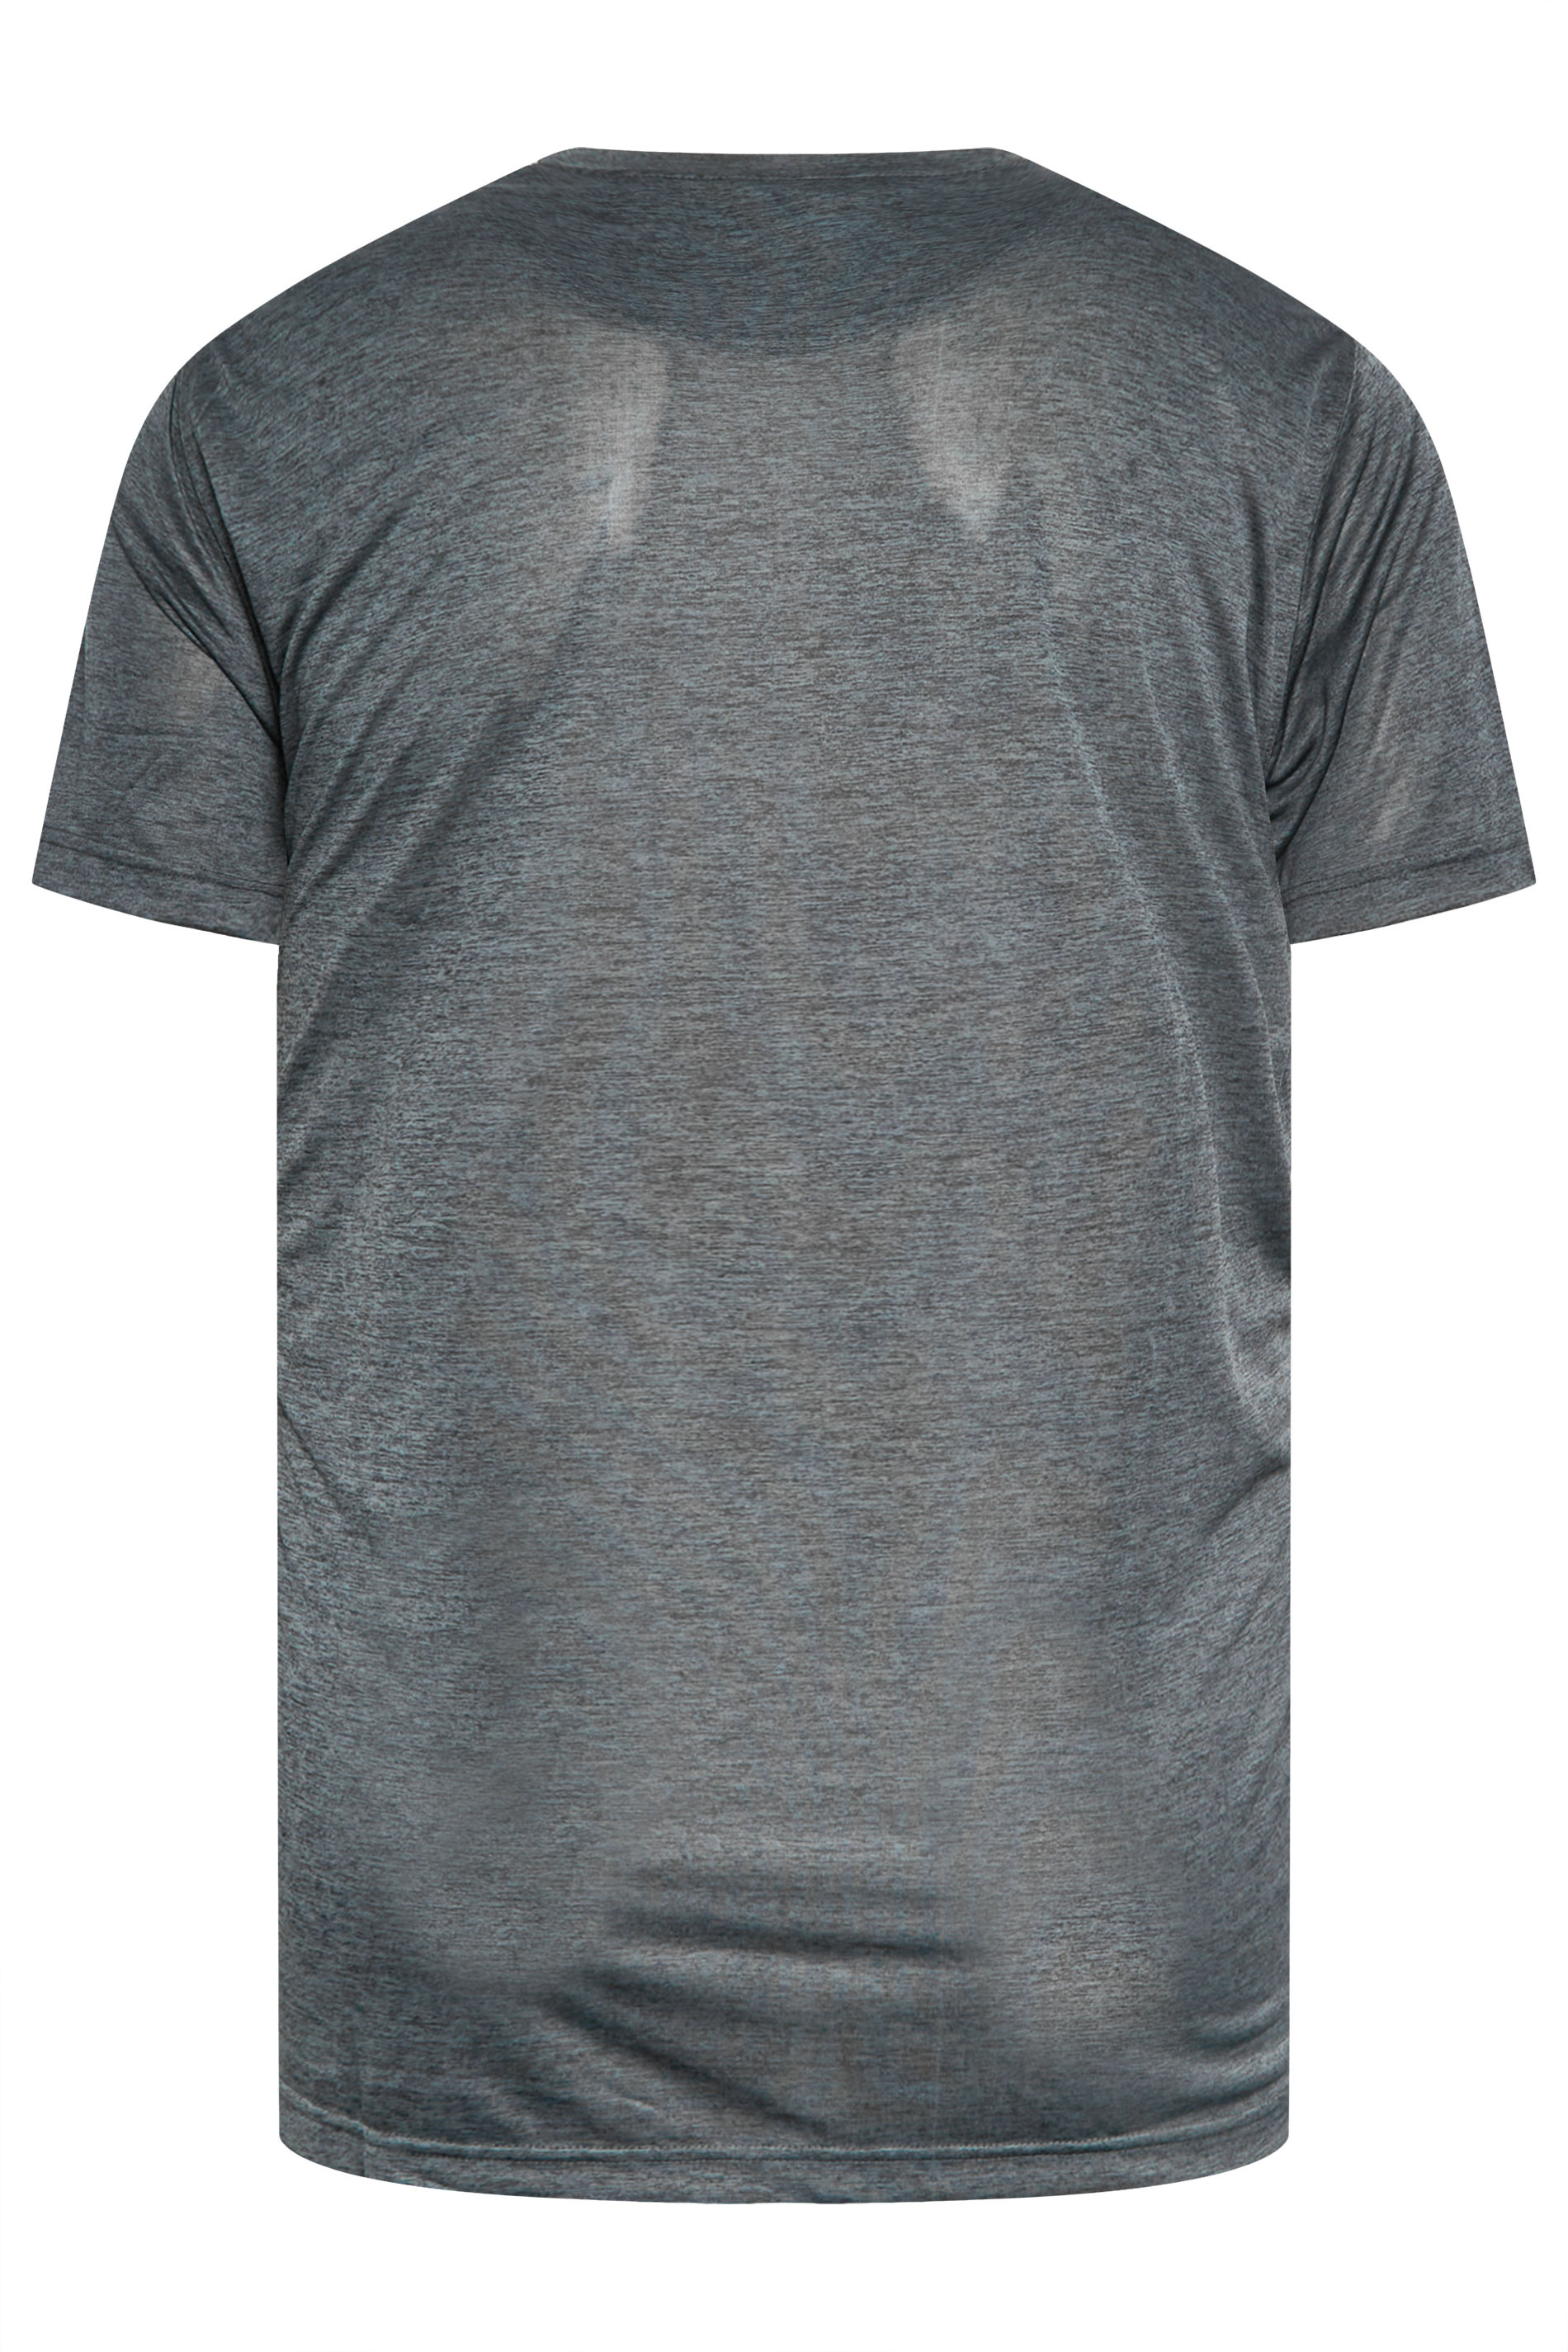 D555 Big & Tall Dark Grey Dry Wear T-Shirt | Bad Rhino 2